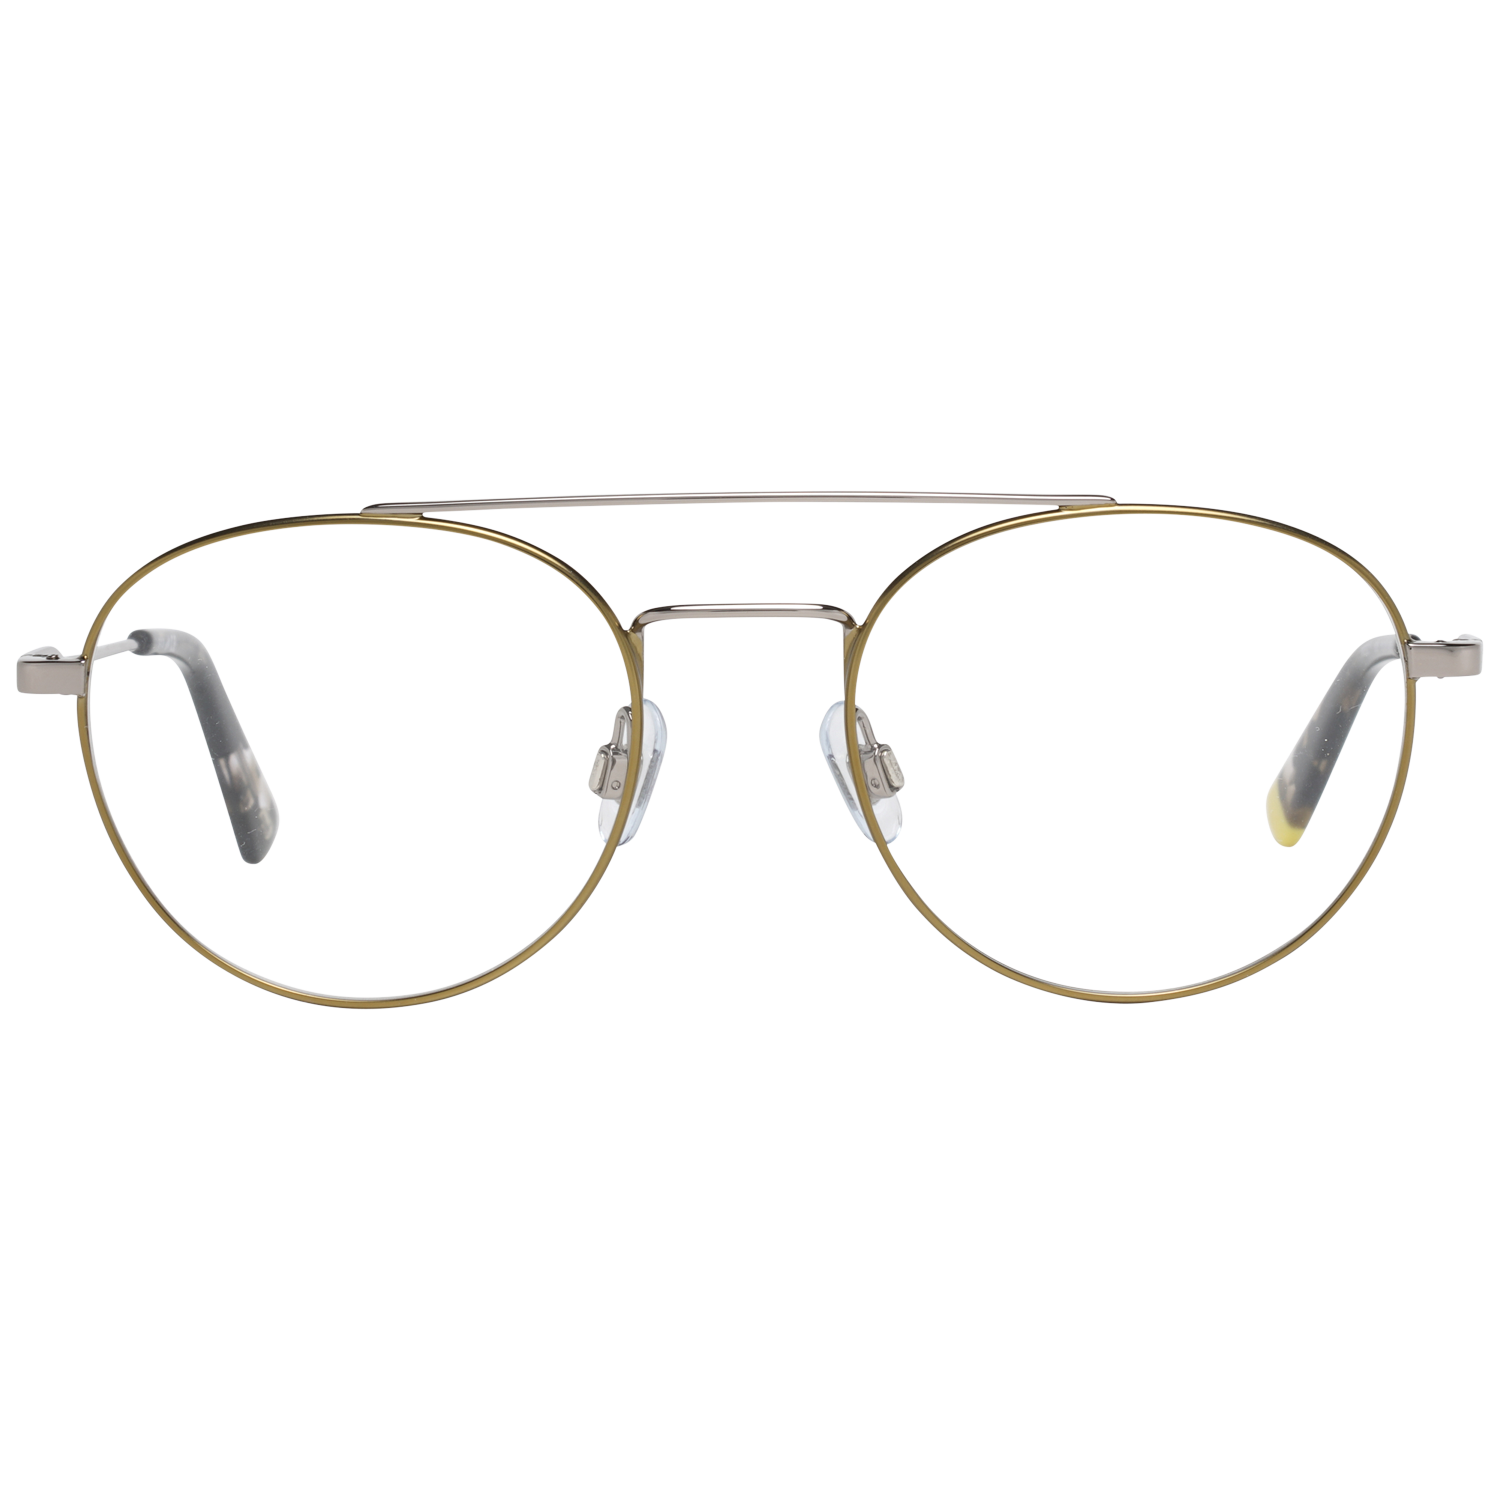 Web Frames Web Glasses Optical Frame WE5271 008 51 Eyeglasses Eyewear UK USA Australia 